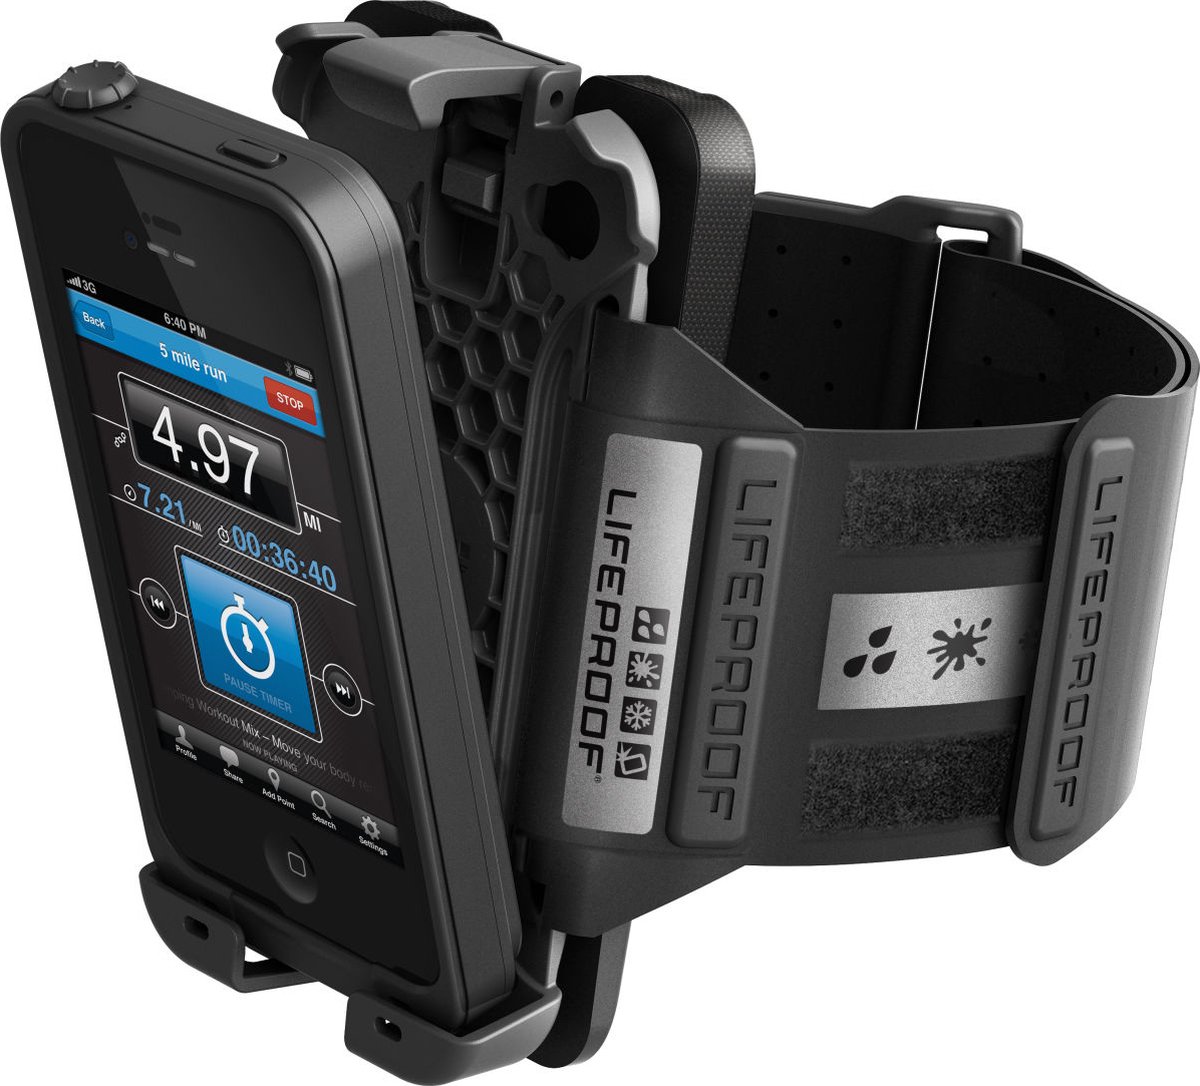 LifeProof Armband/Zwemband Case voor Apple iPhone 4/4s - Zwart